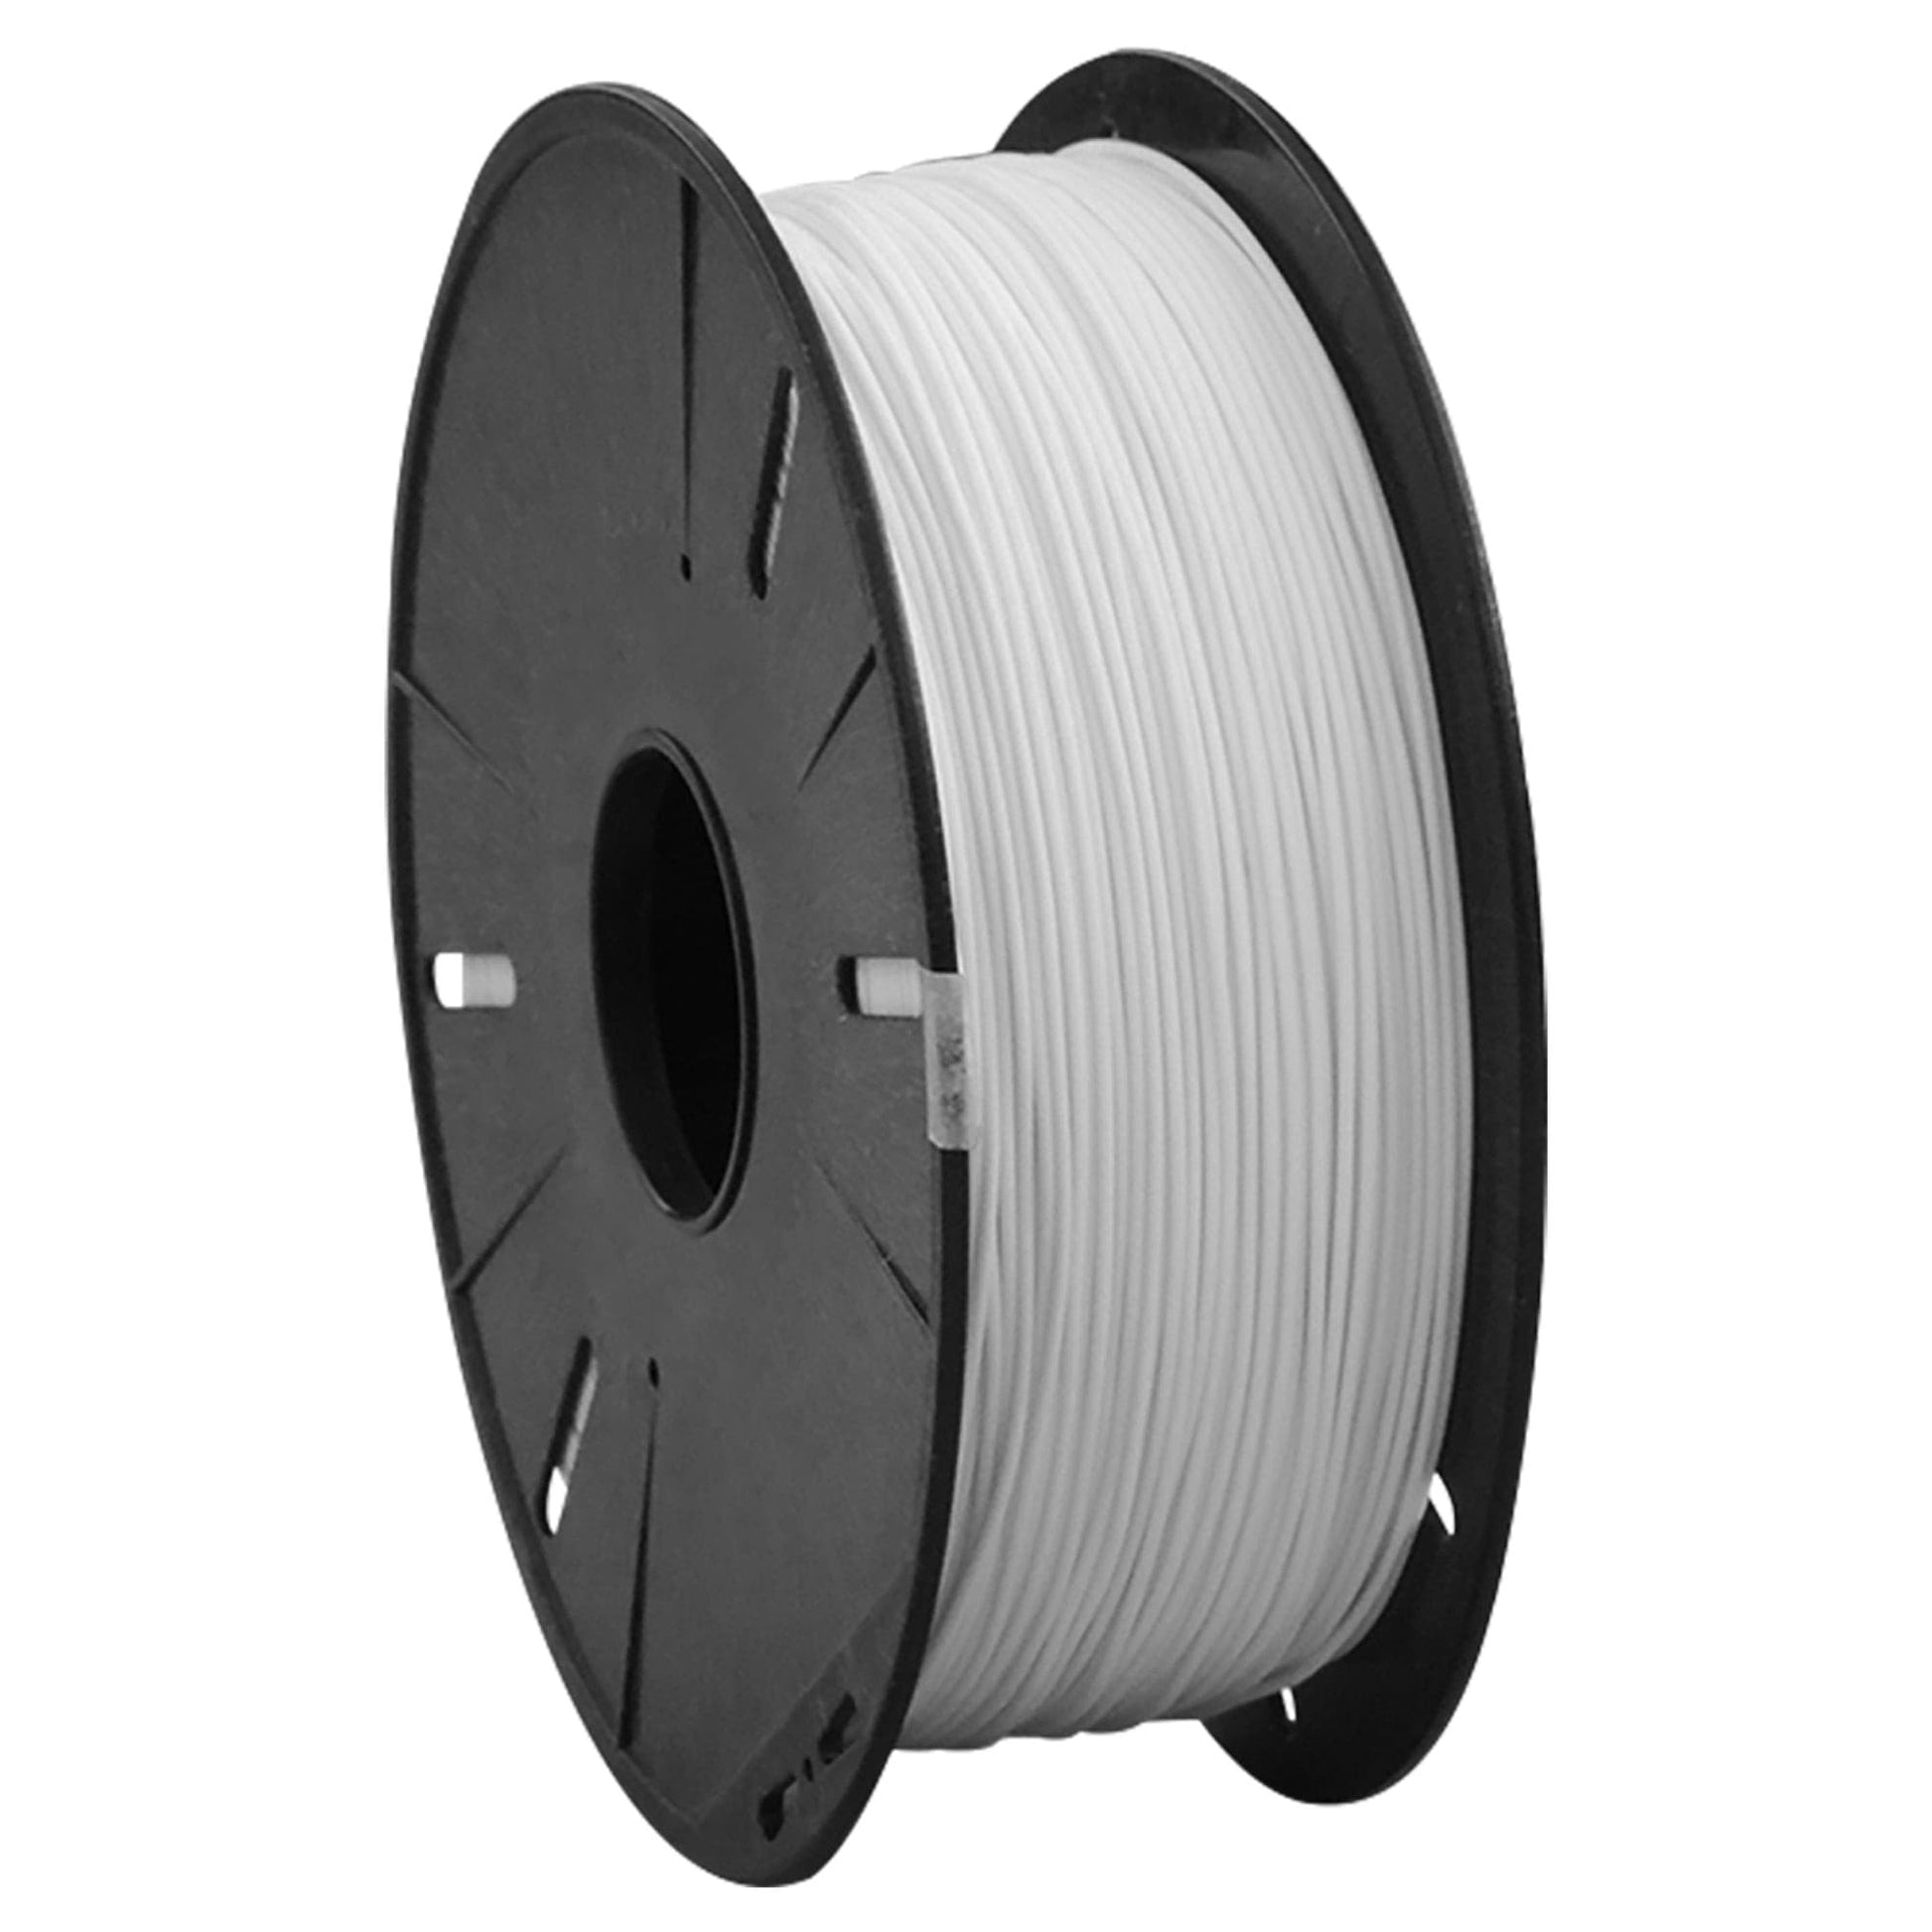 PETG White 1.75 mm filament